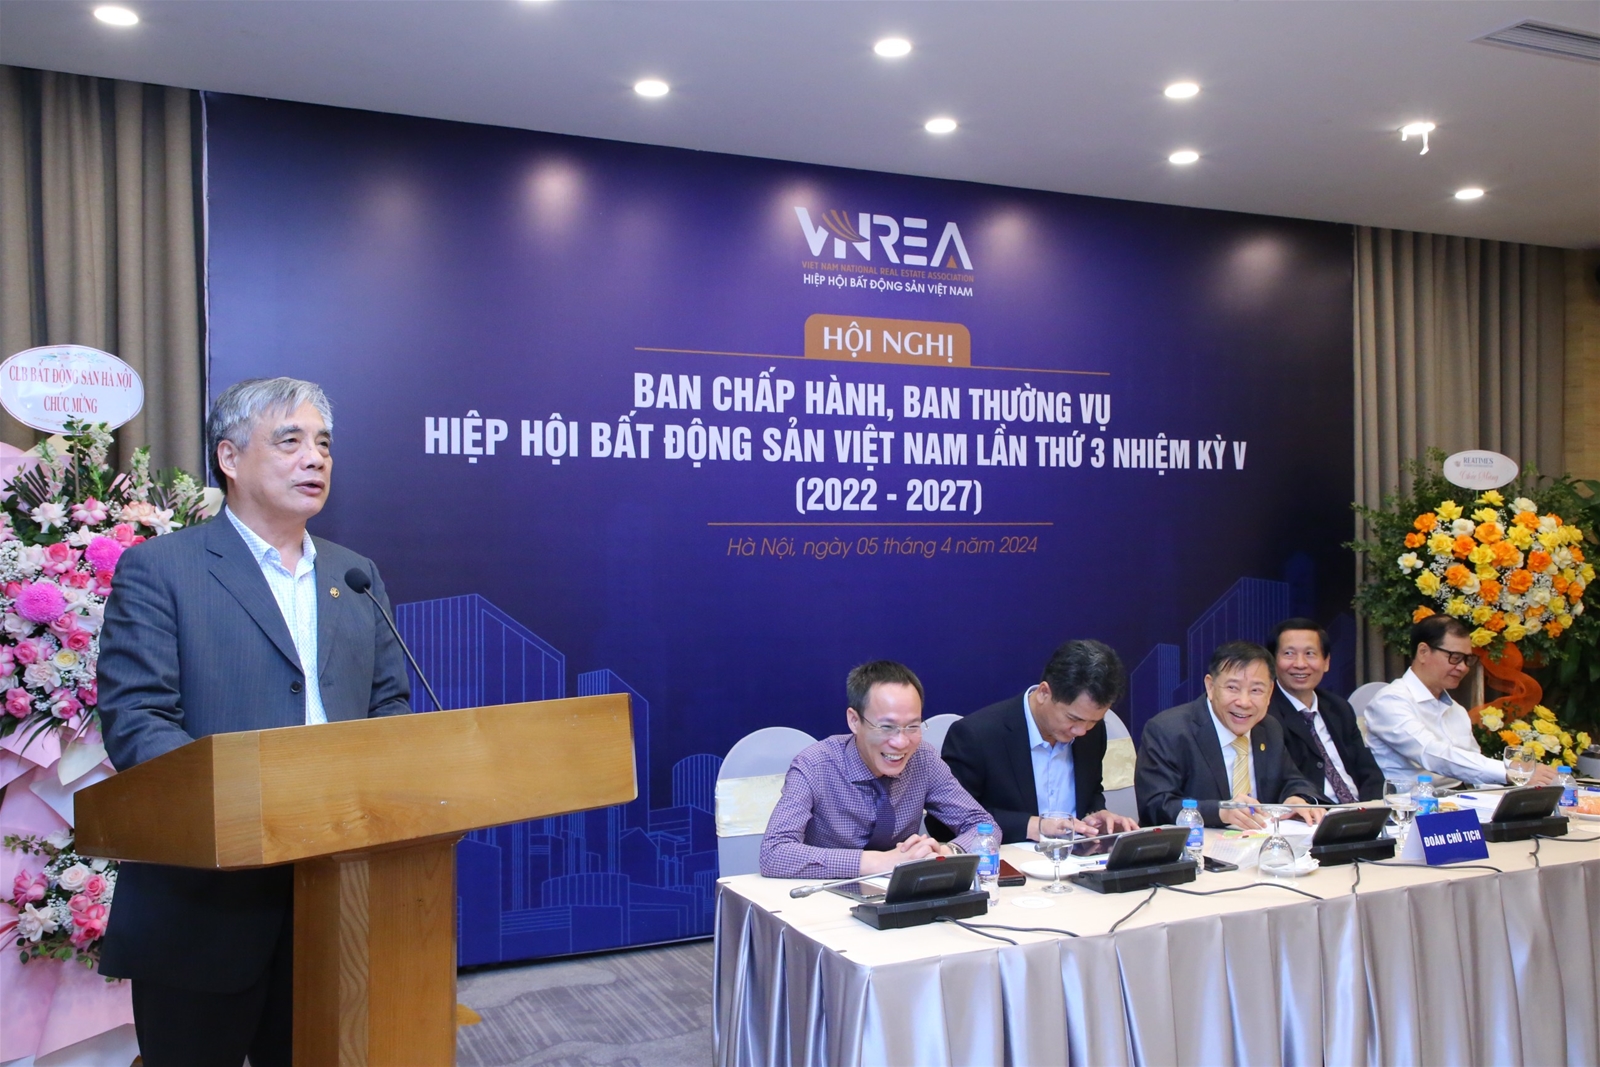  PGS.TS. Trần Đình Thiên: "VNREA đã liên kết chặt chẽ với đội ngũ chuyên gia tạo nên sức mạnh cộng hưởng hỗ trợ thị trường" 